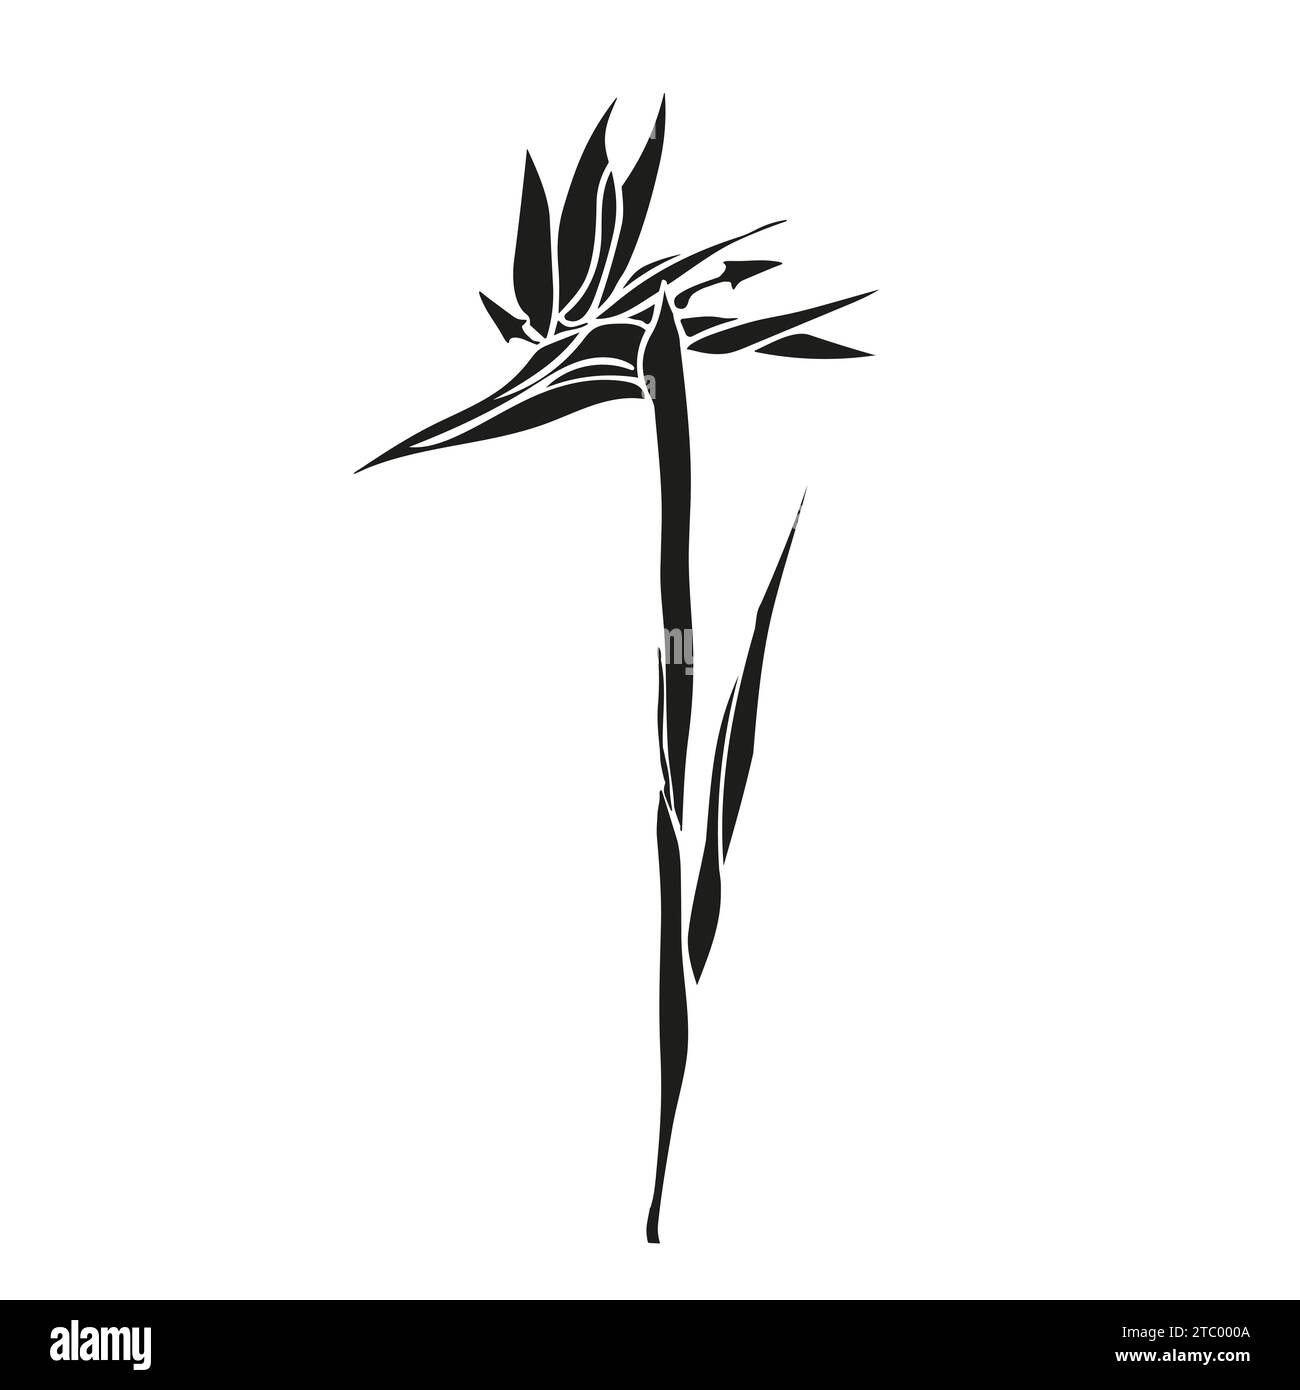 Oiseau de paradis fleur tropicale strelitzia avec feuilles silhouette pour la conception de carte ou invitation, scrapbook. Illustration dessinée à la main de vecteur, isoler Illustration de Vecteur